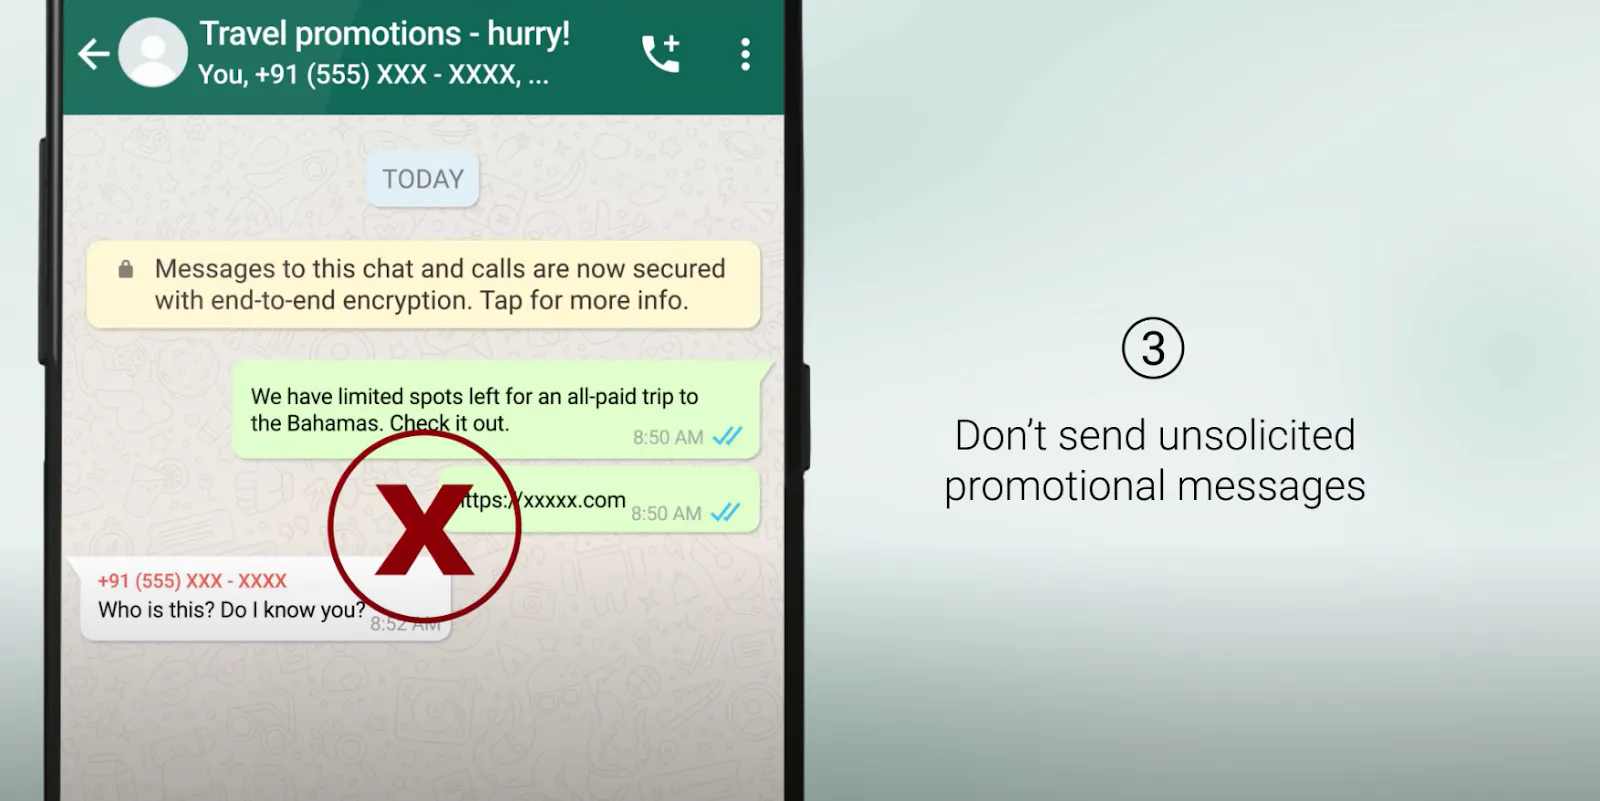 WhatsApp baniu sua conta? App terá opção para recorrer da decisão –  Tecnoblog